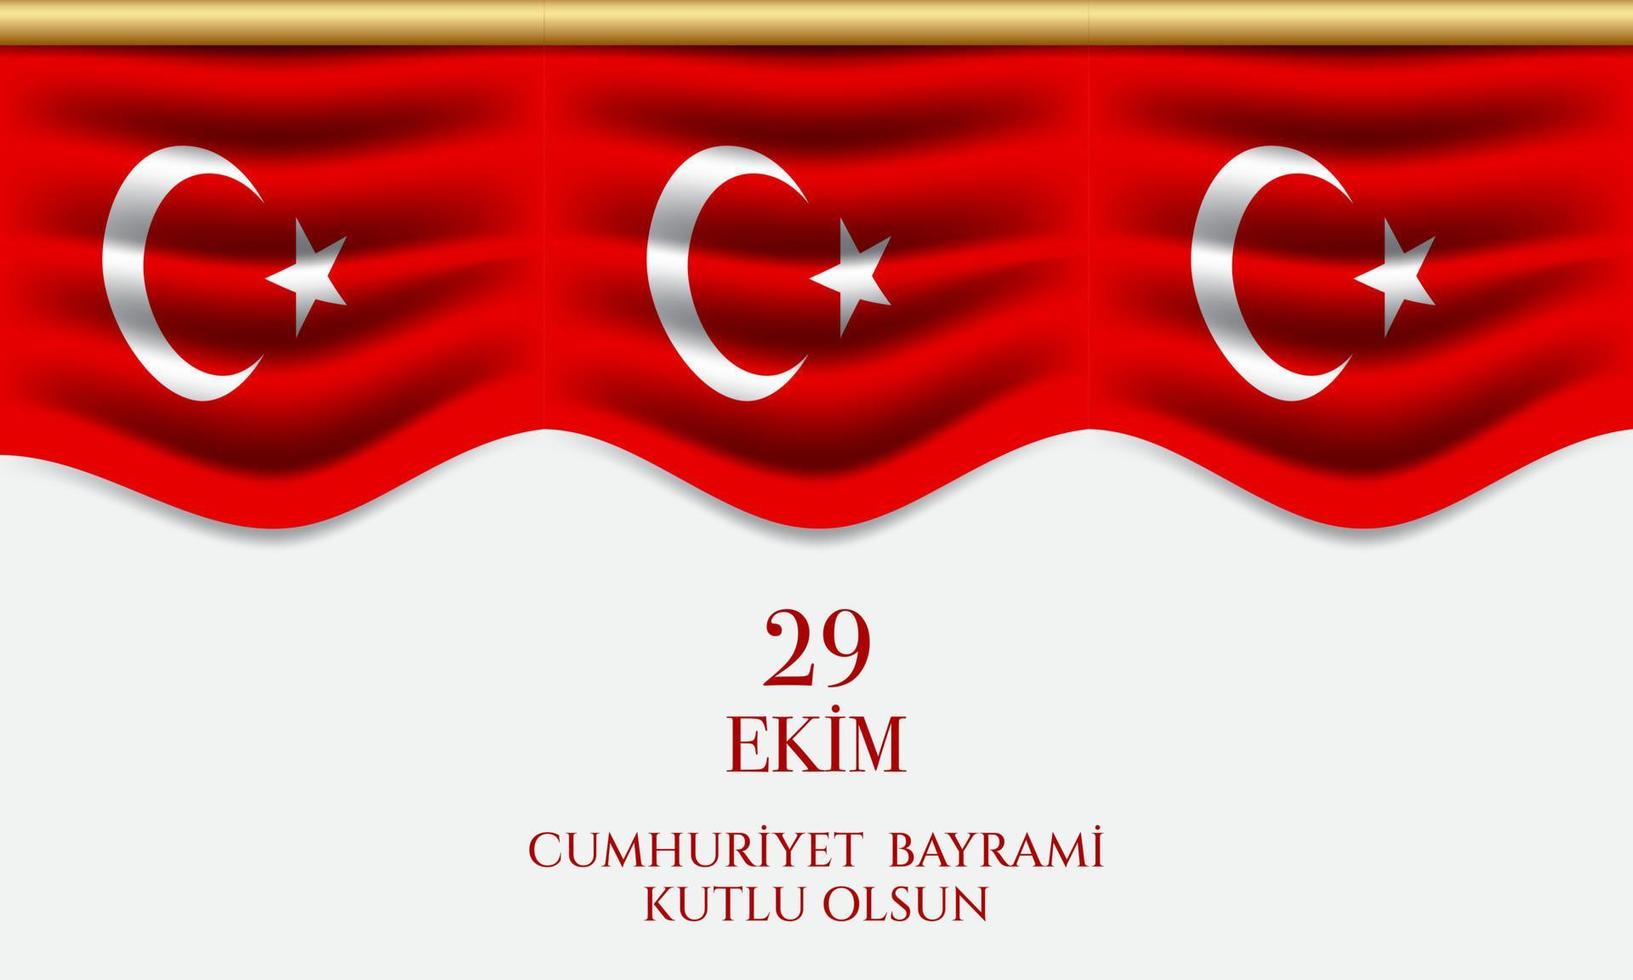 sfondo della Turchia festa della repubblica. illustrazione vettoriale